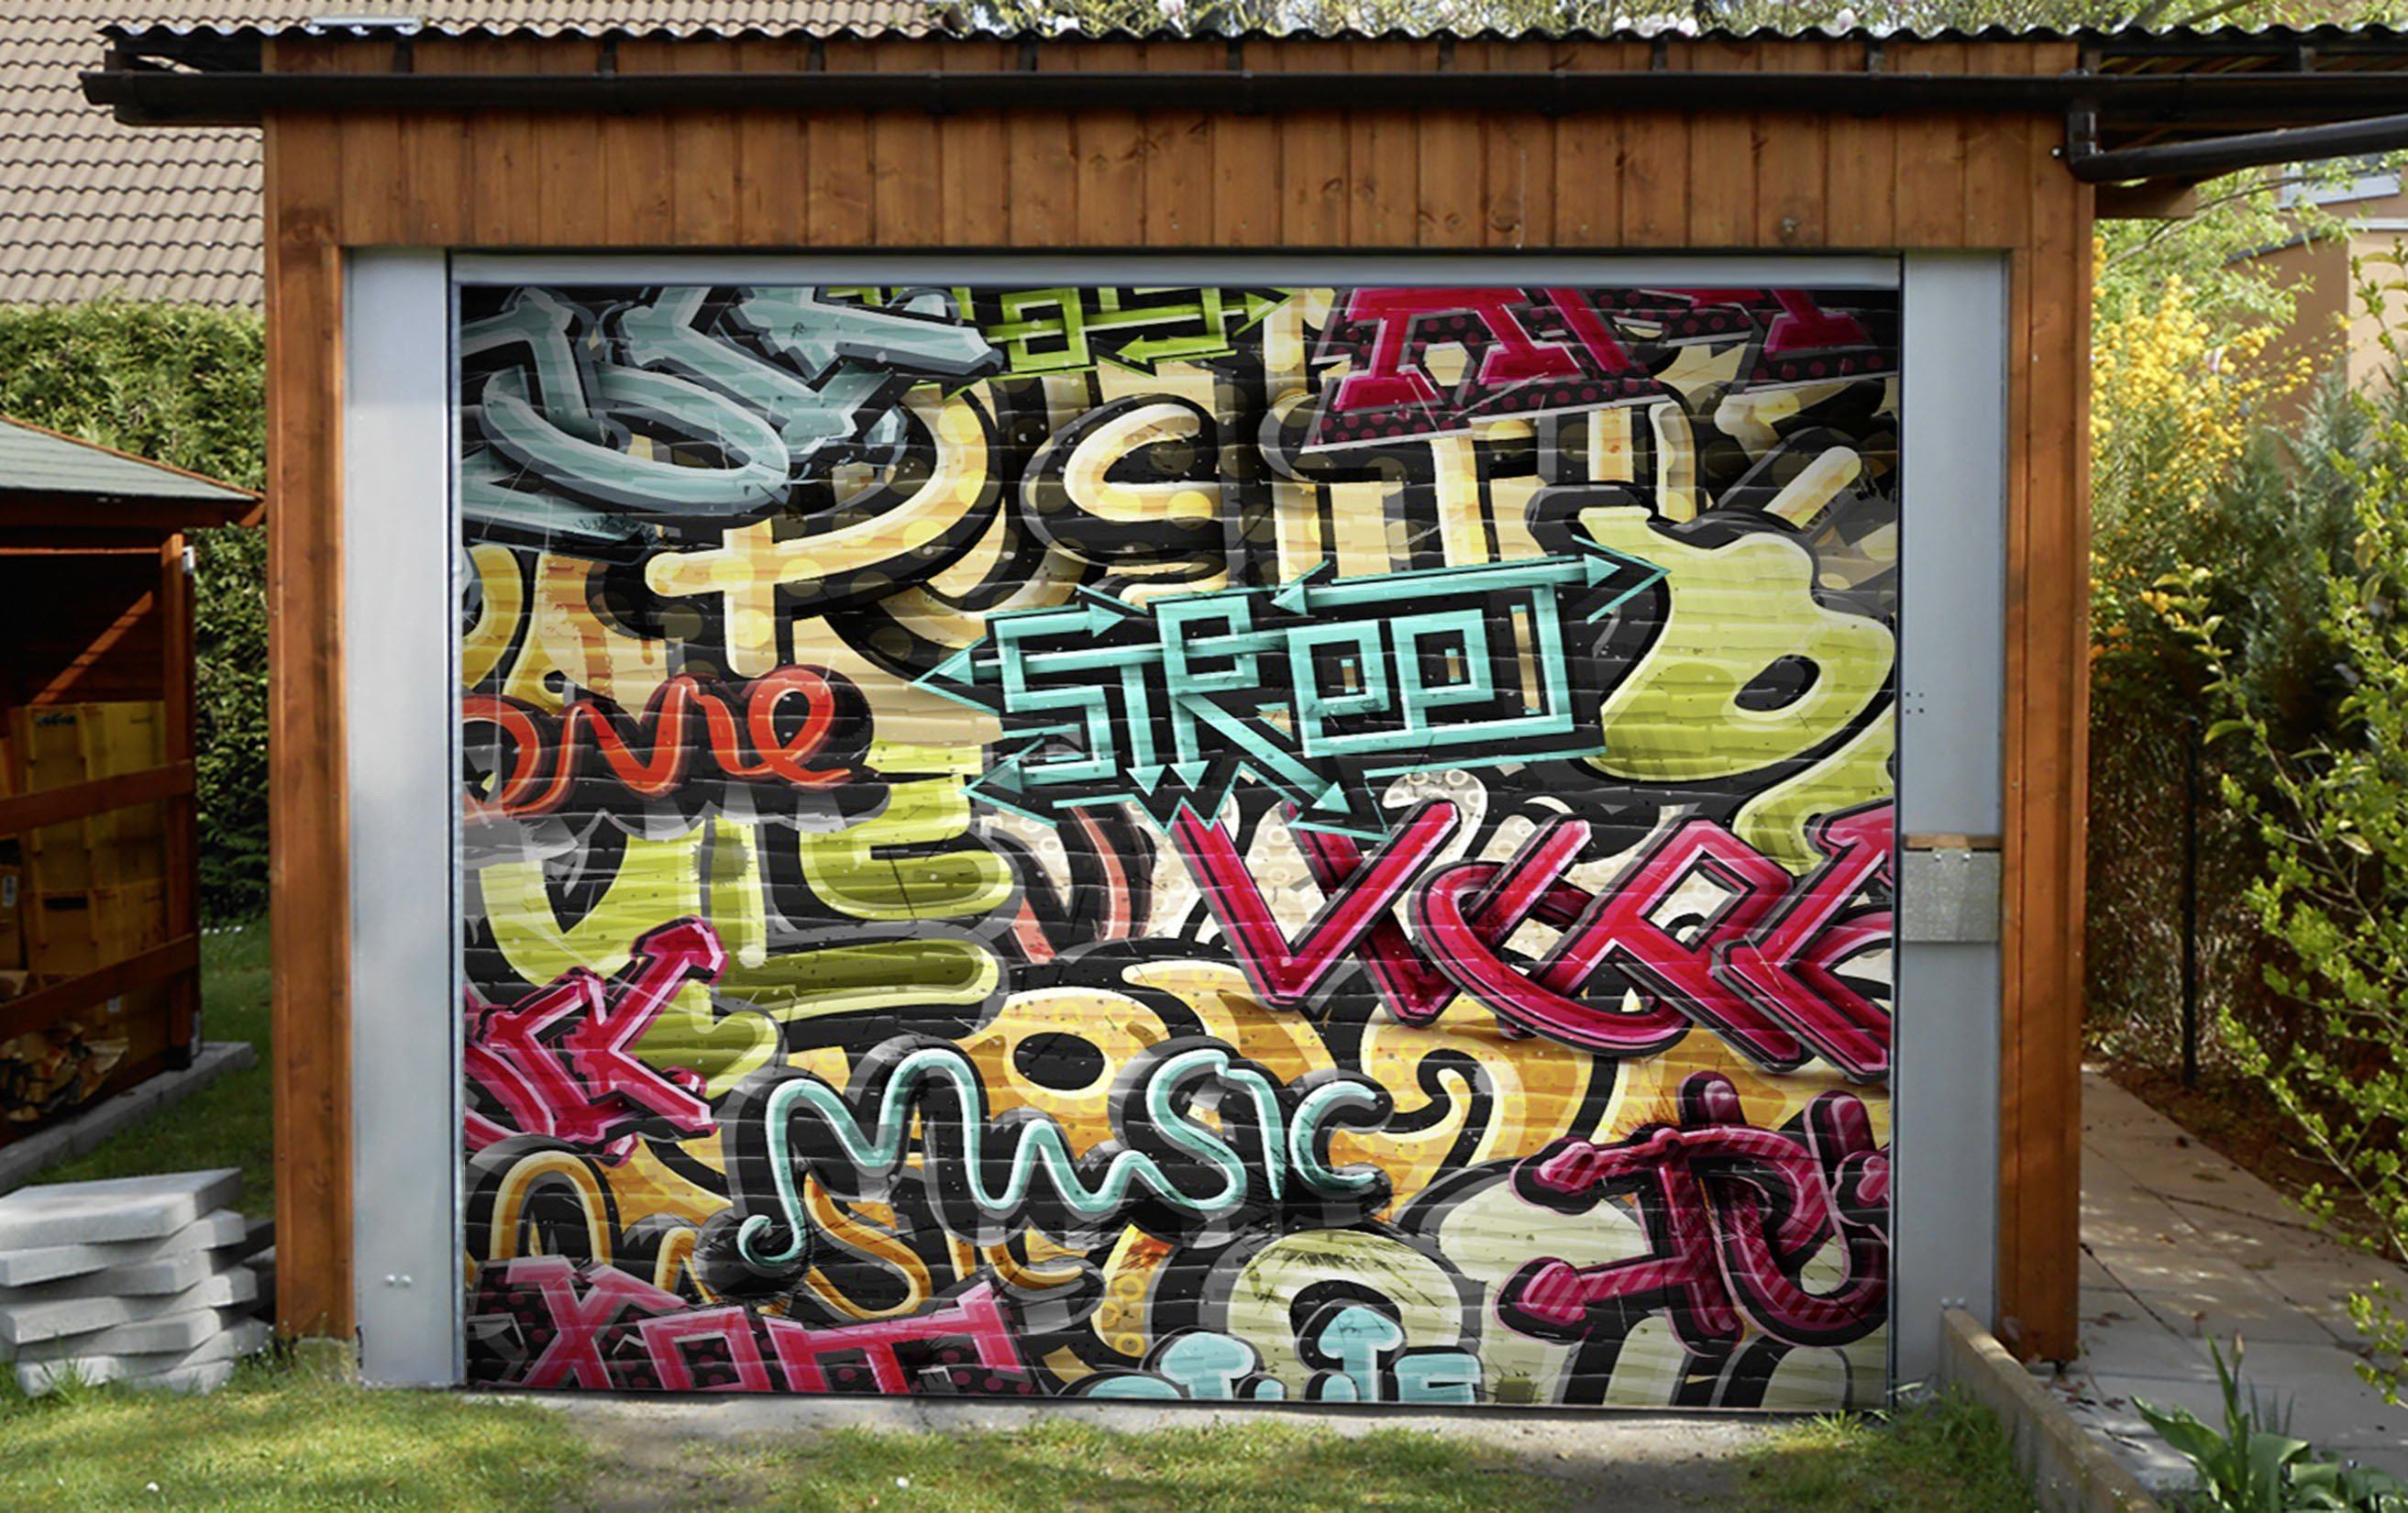 3D Graffiti Color Words 311 Garage Door Mural Wallpaper AJ Wallpaper 